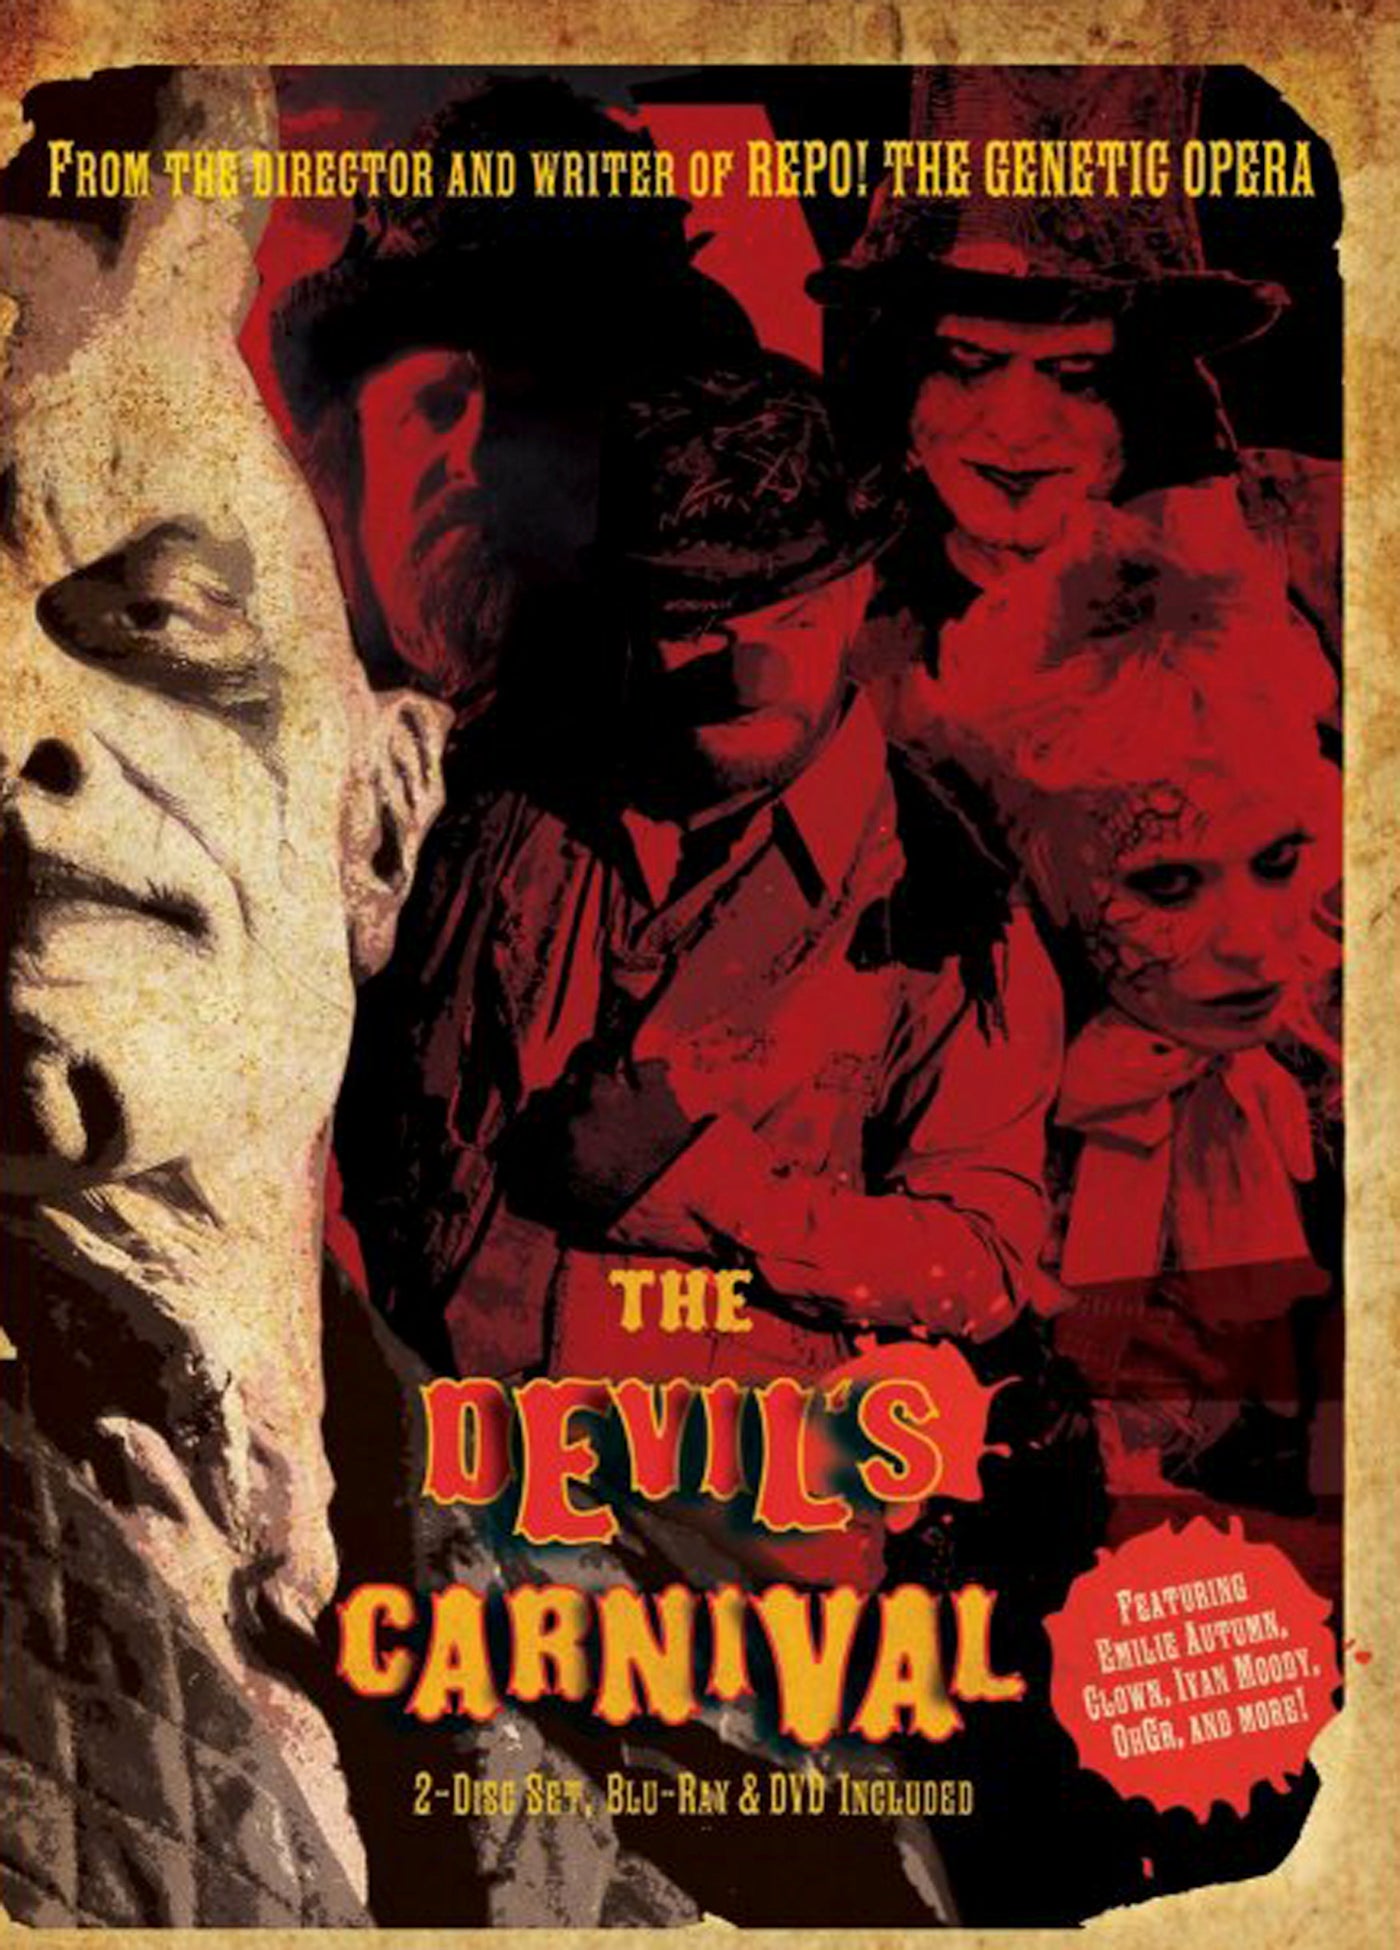 THE DEVIL'S CARNIVAL BLU-RAY/DVD